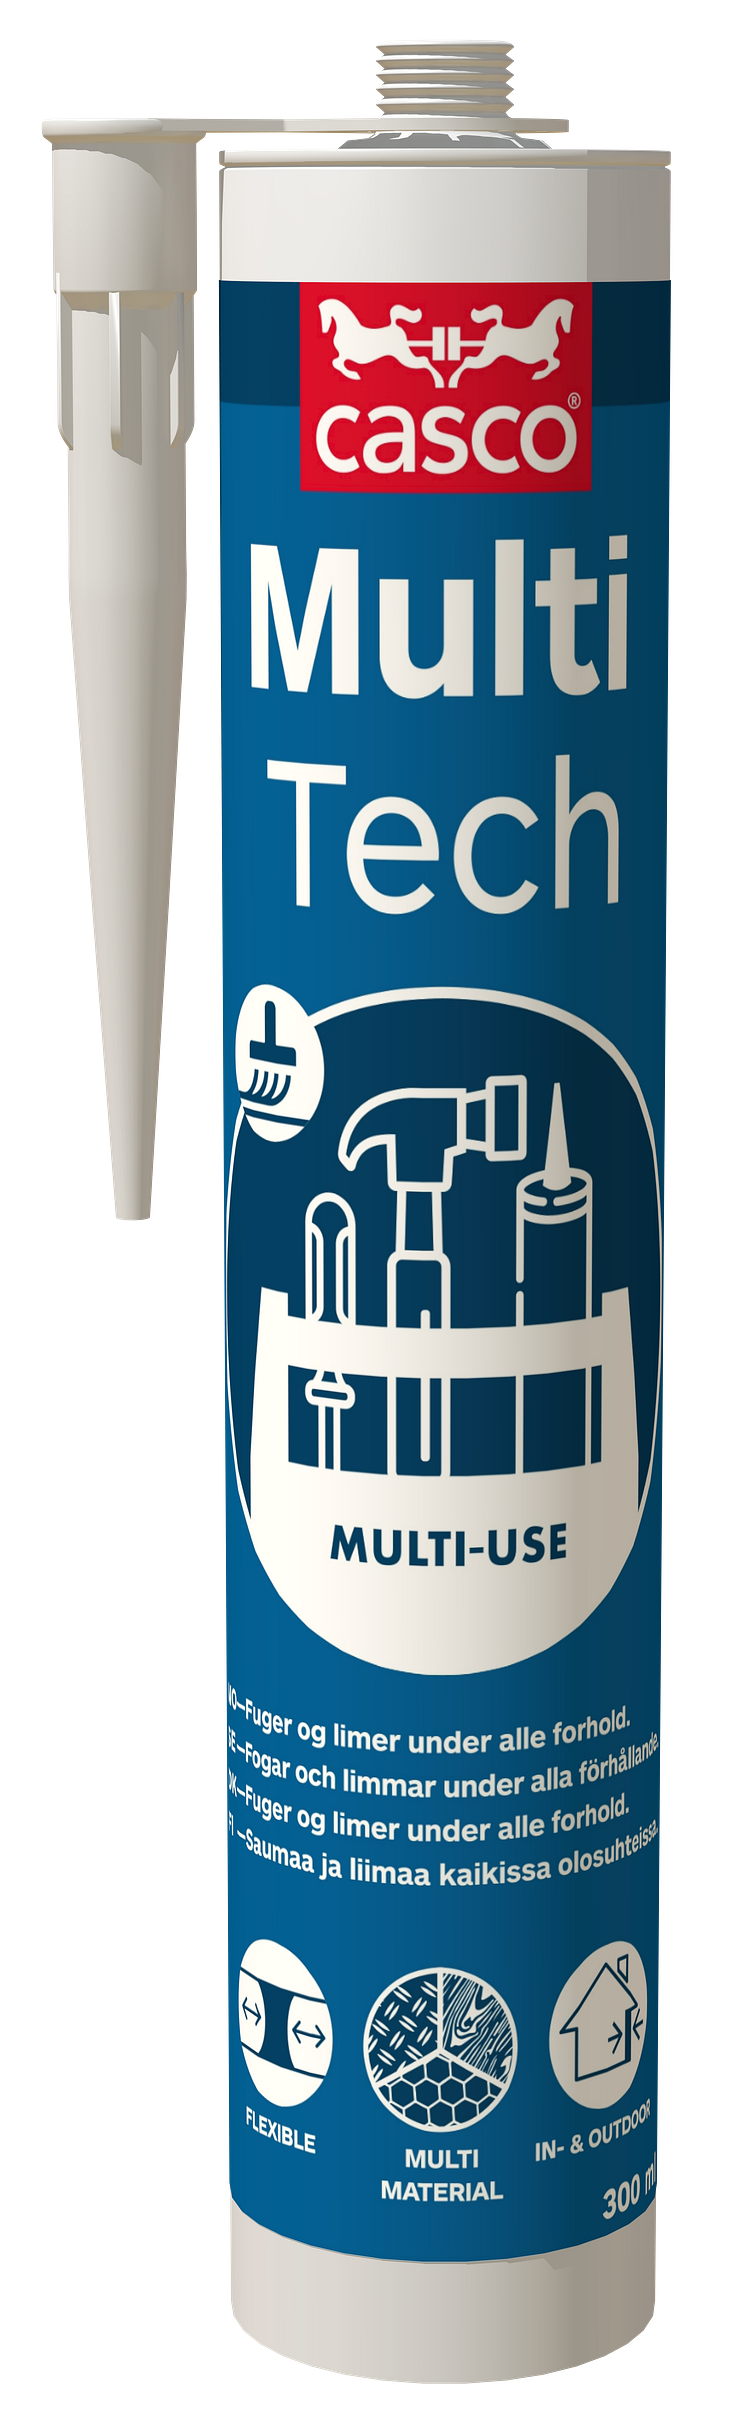 MultiTech 300 ml.png